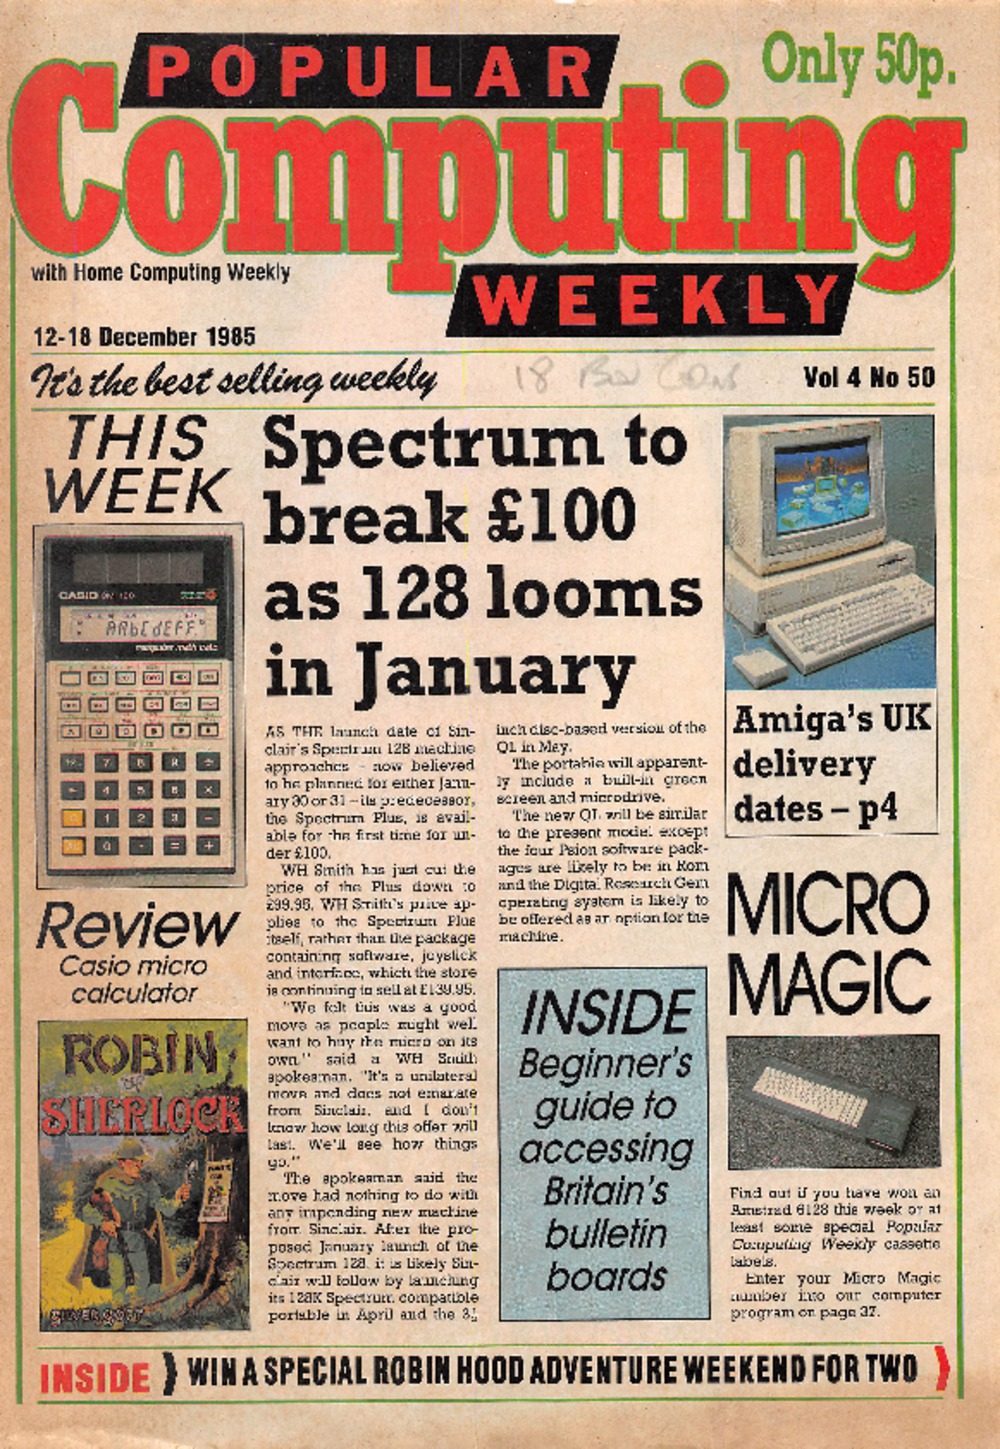 Article: Popular Computing Weekly Vol 4 No 50 - 12 -18 December 1985